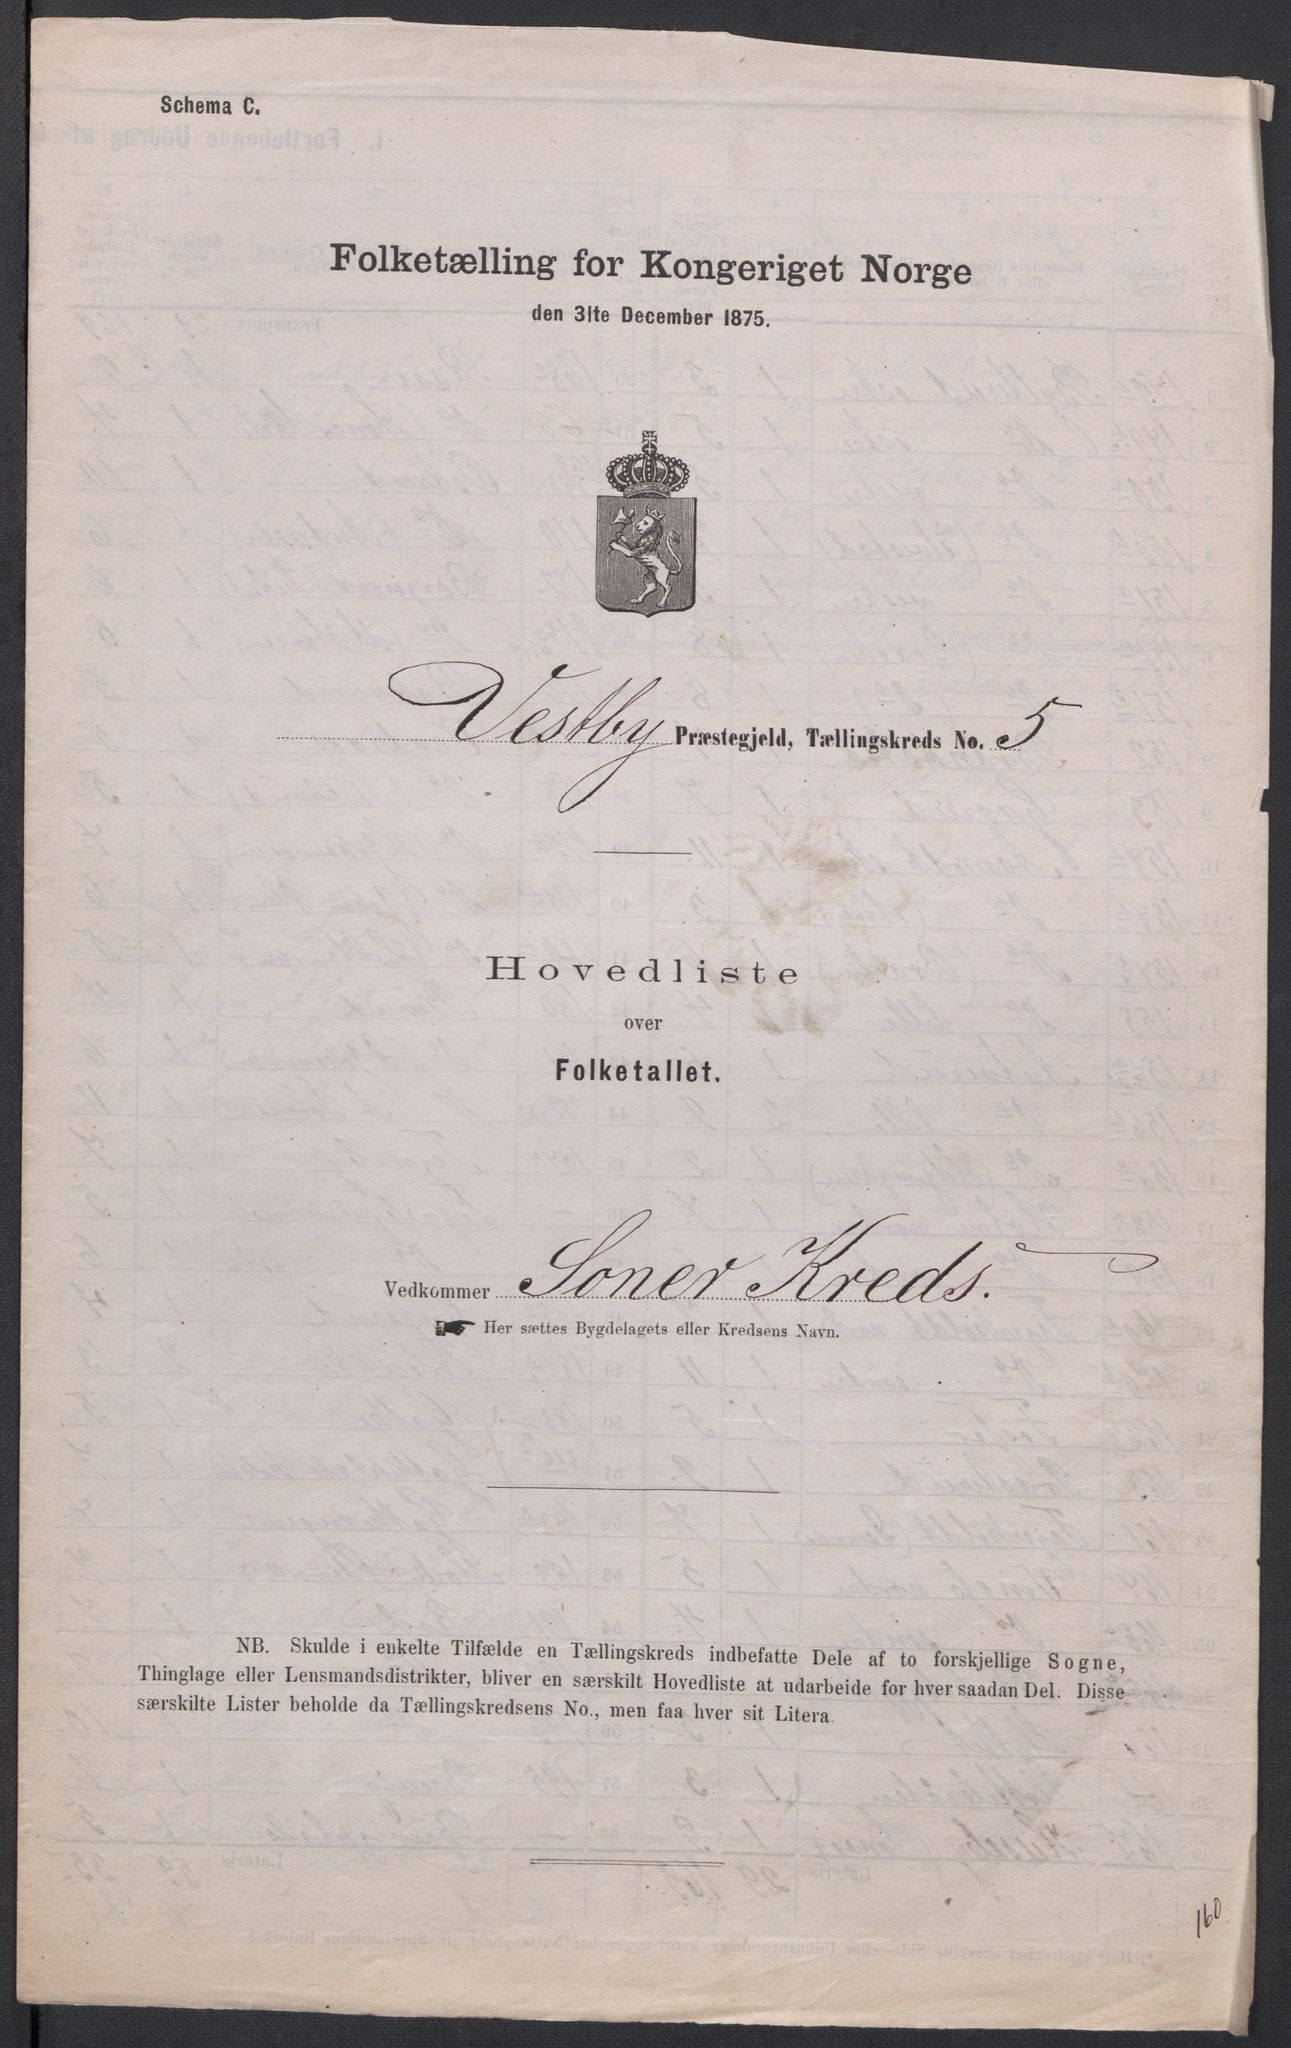 RA, Folketelling 1875 for 0211L Vestby prestegjeld, Vestby sokn, Garder sokn og Såner sokn, 1875, s. 16